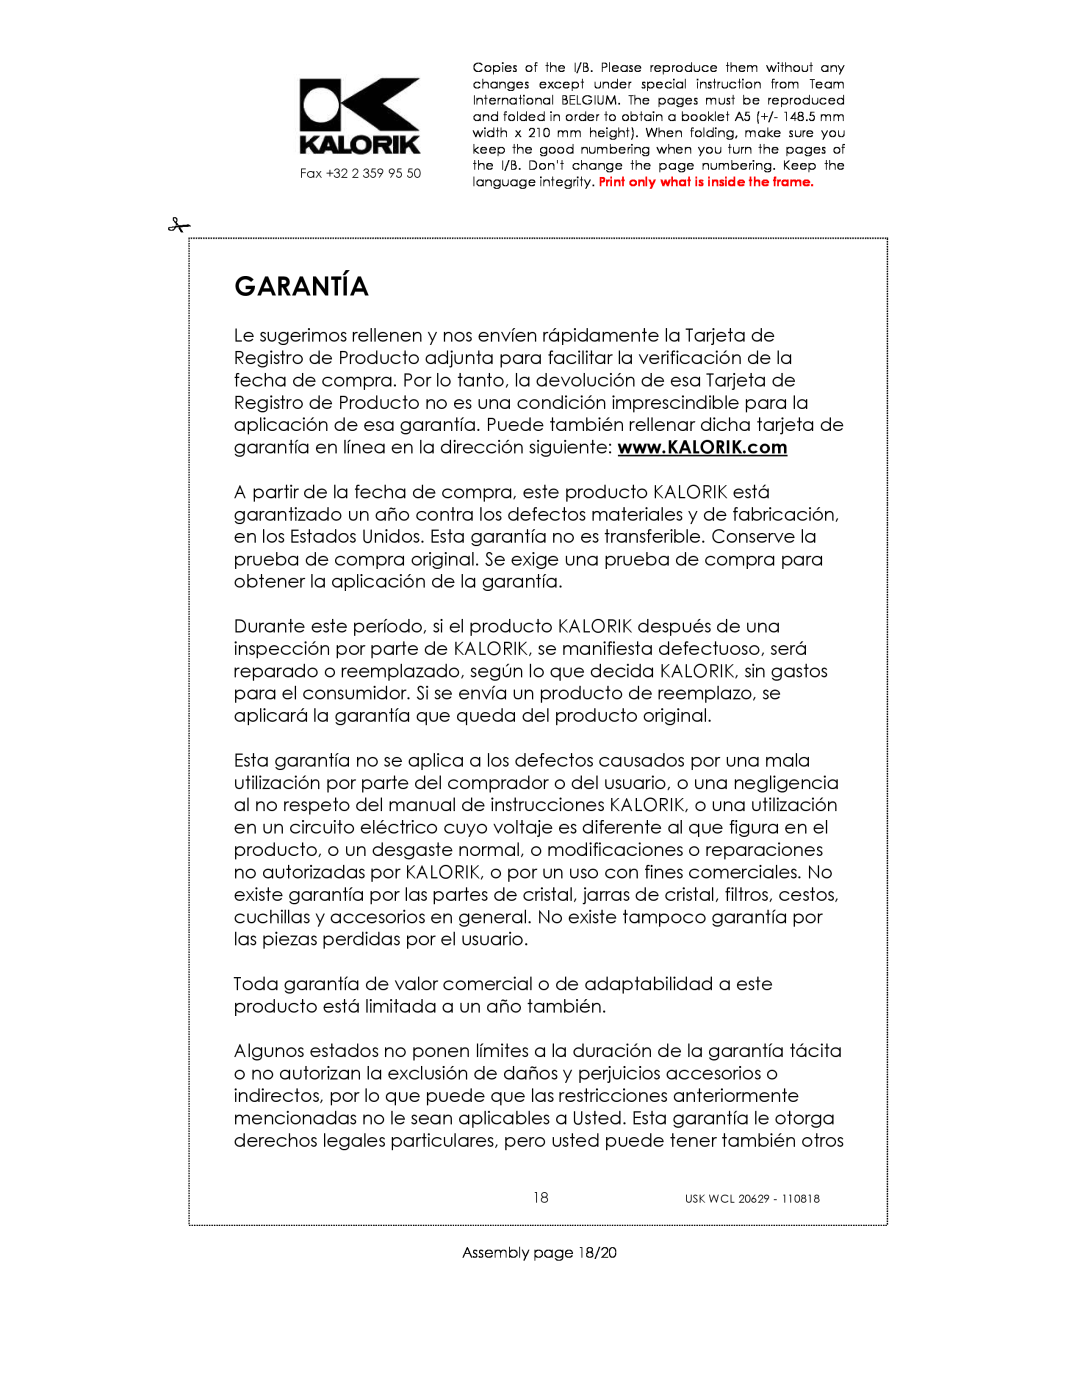 Kalorik USK WCL 20629 manual Garantía, Assembly page 18/20 